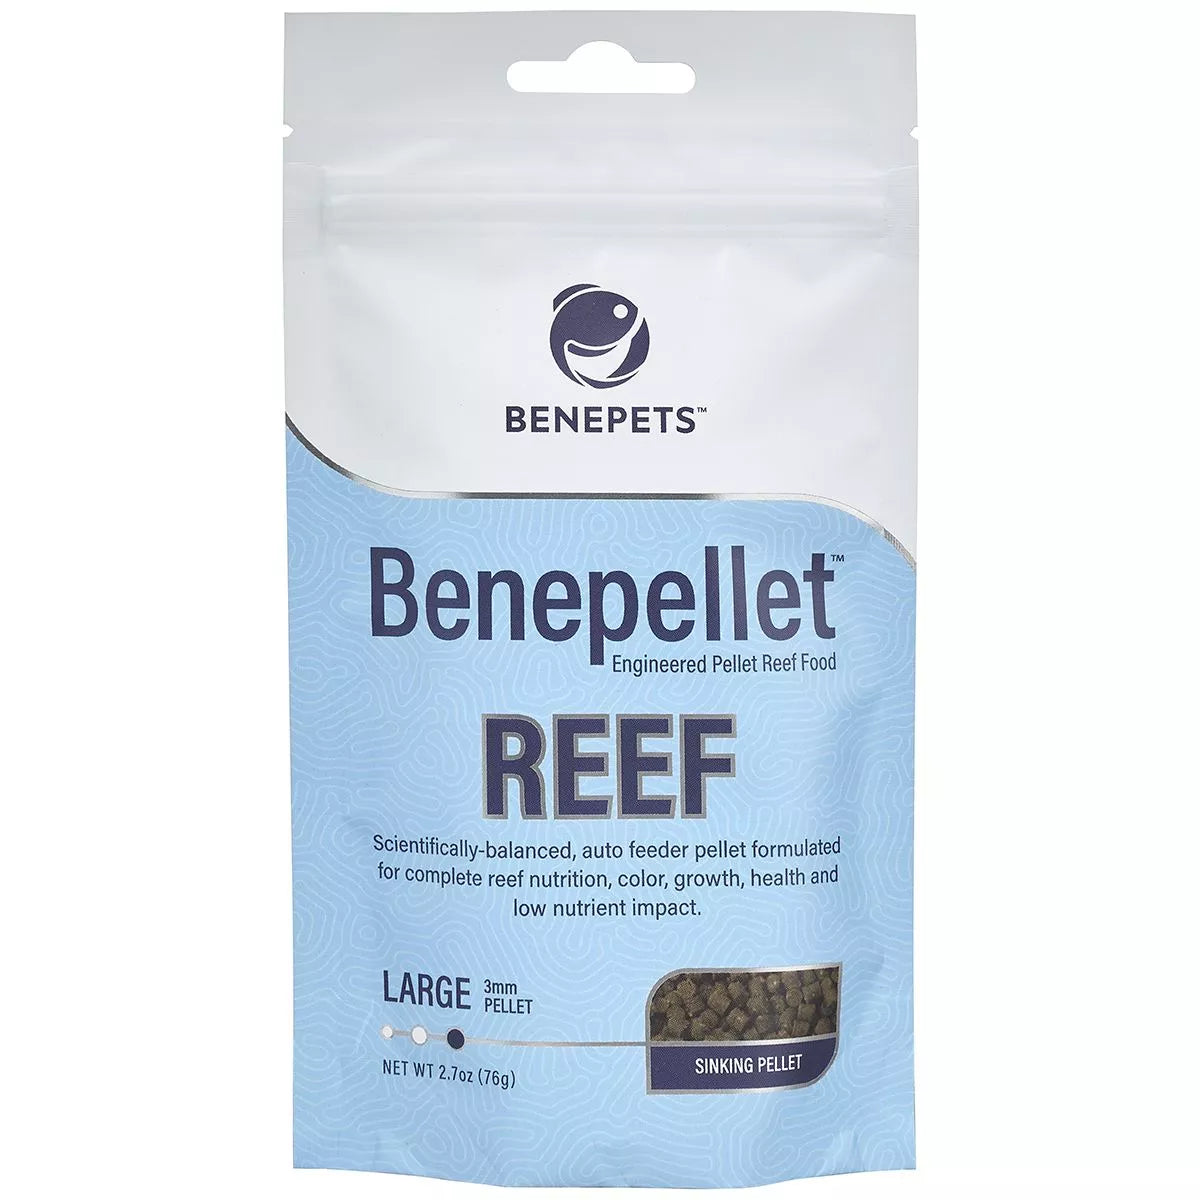 Benepellet Reef Pellet Large